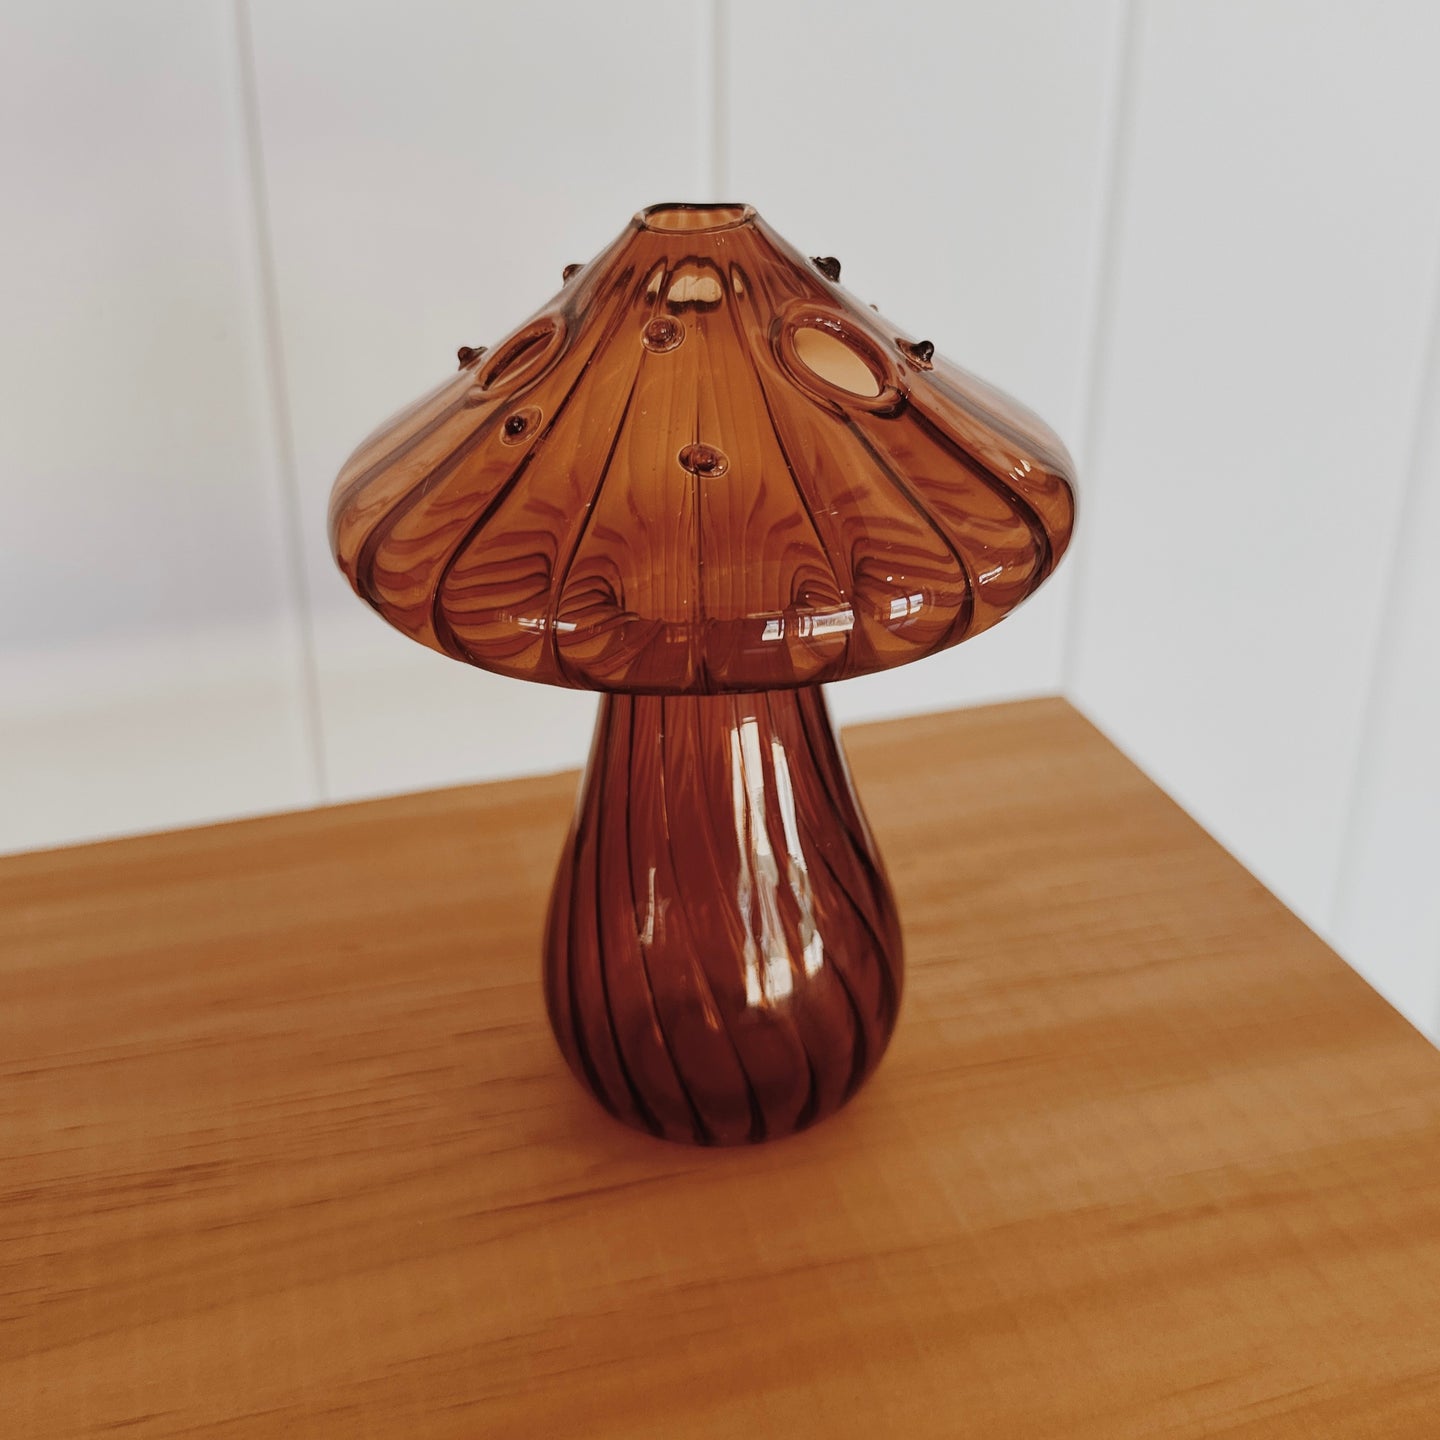 Glass Mushroom Bud Vase in Brown